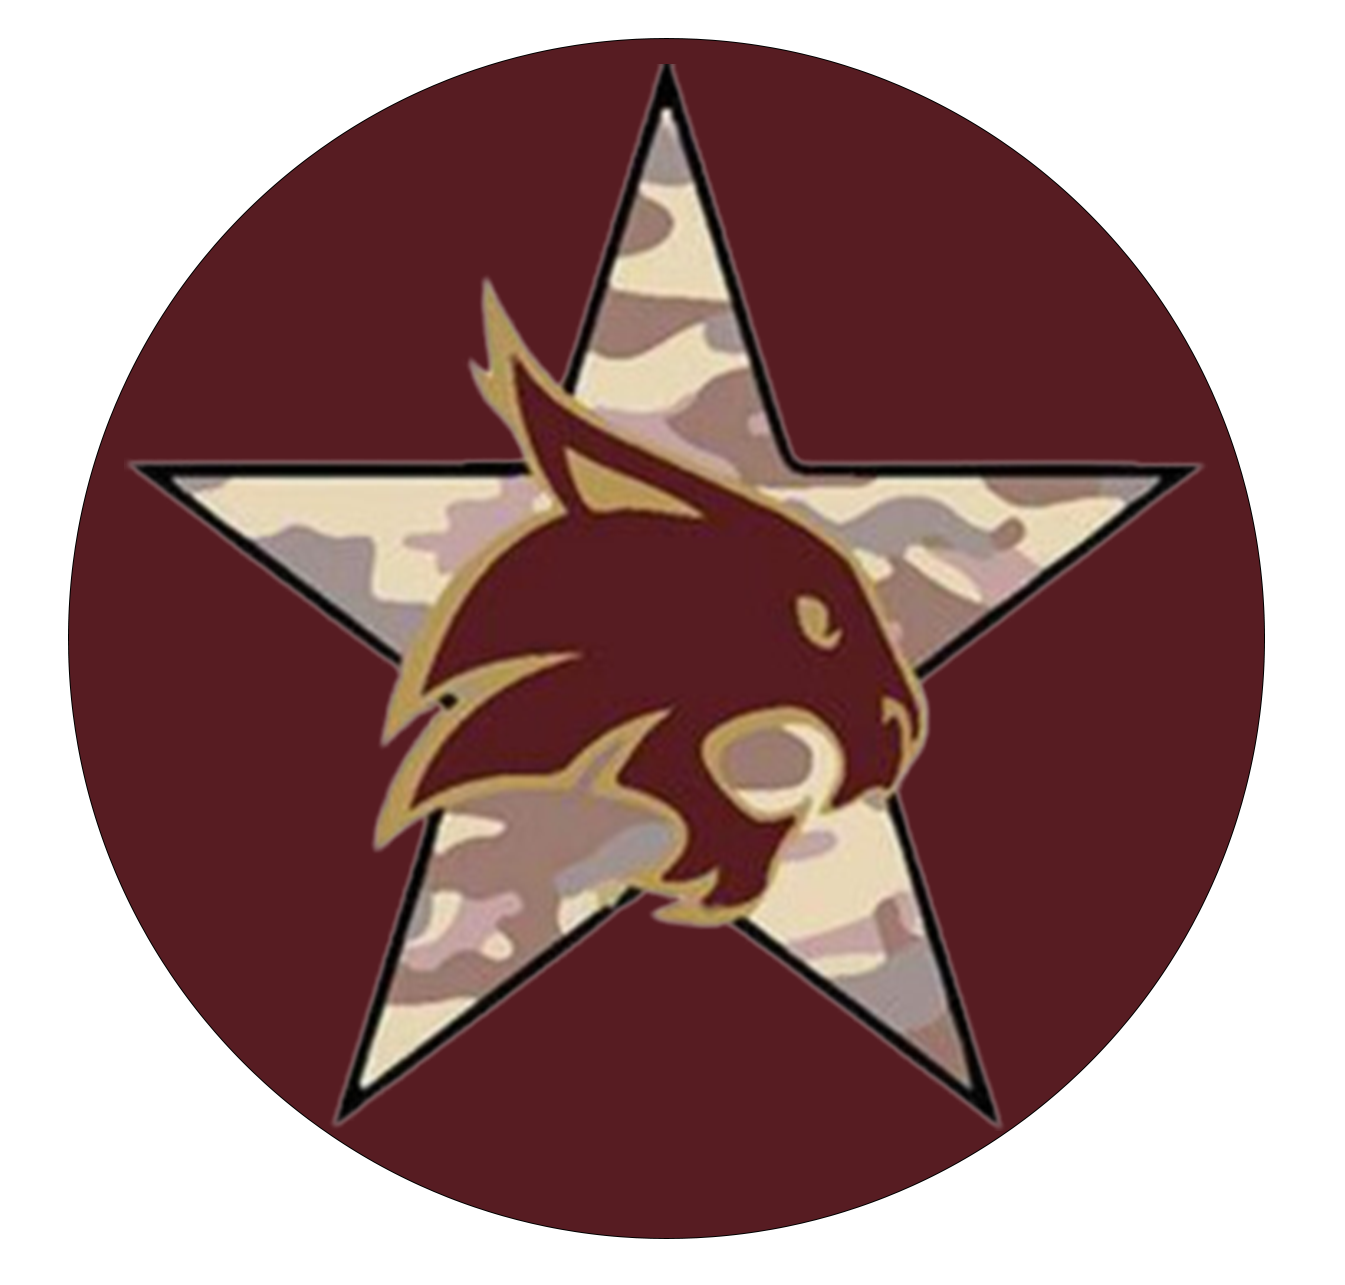 Veteran & Military Connected Badge